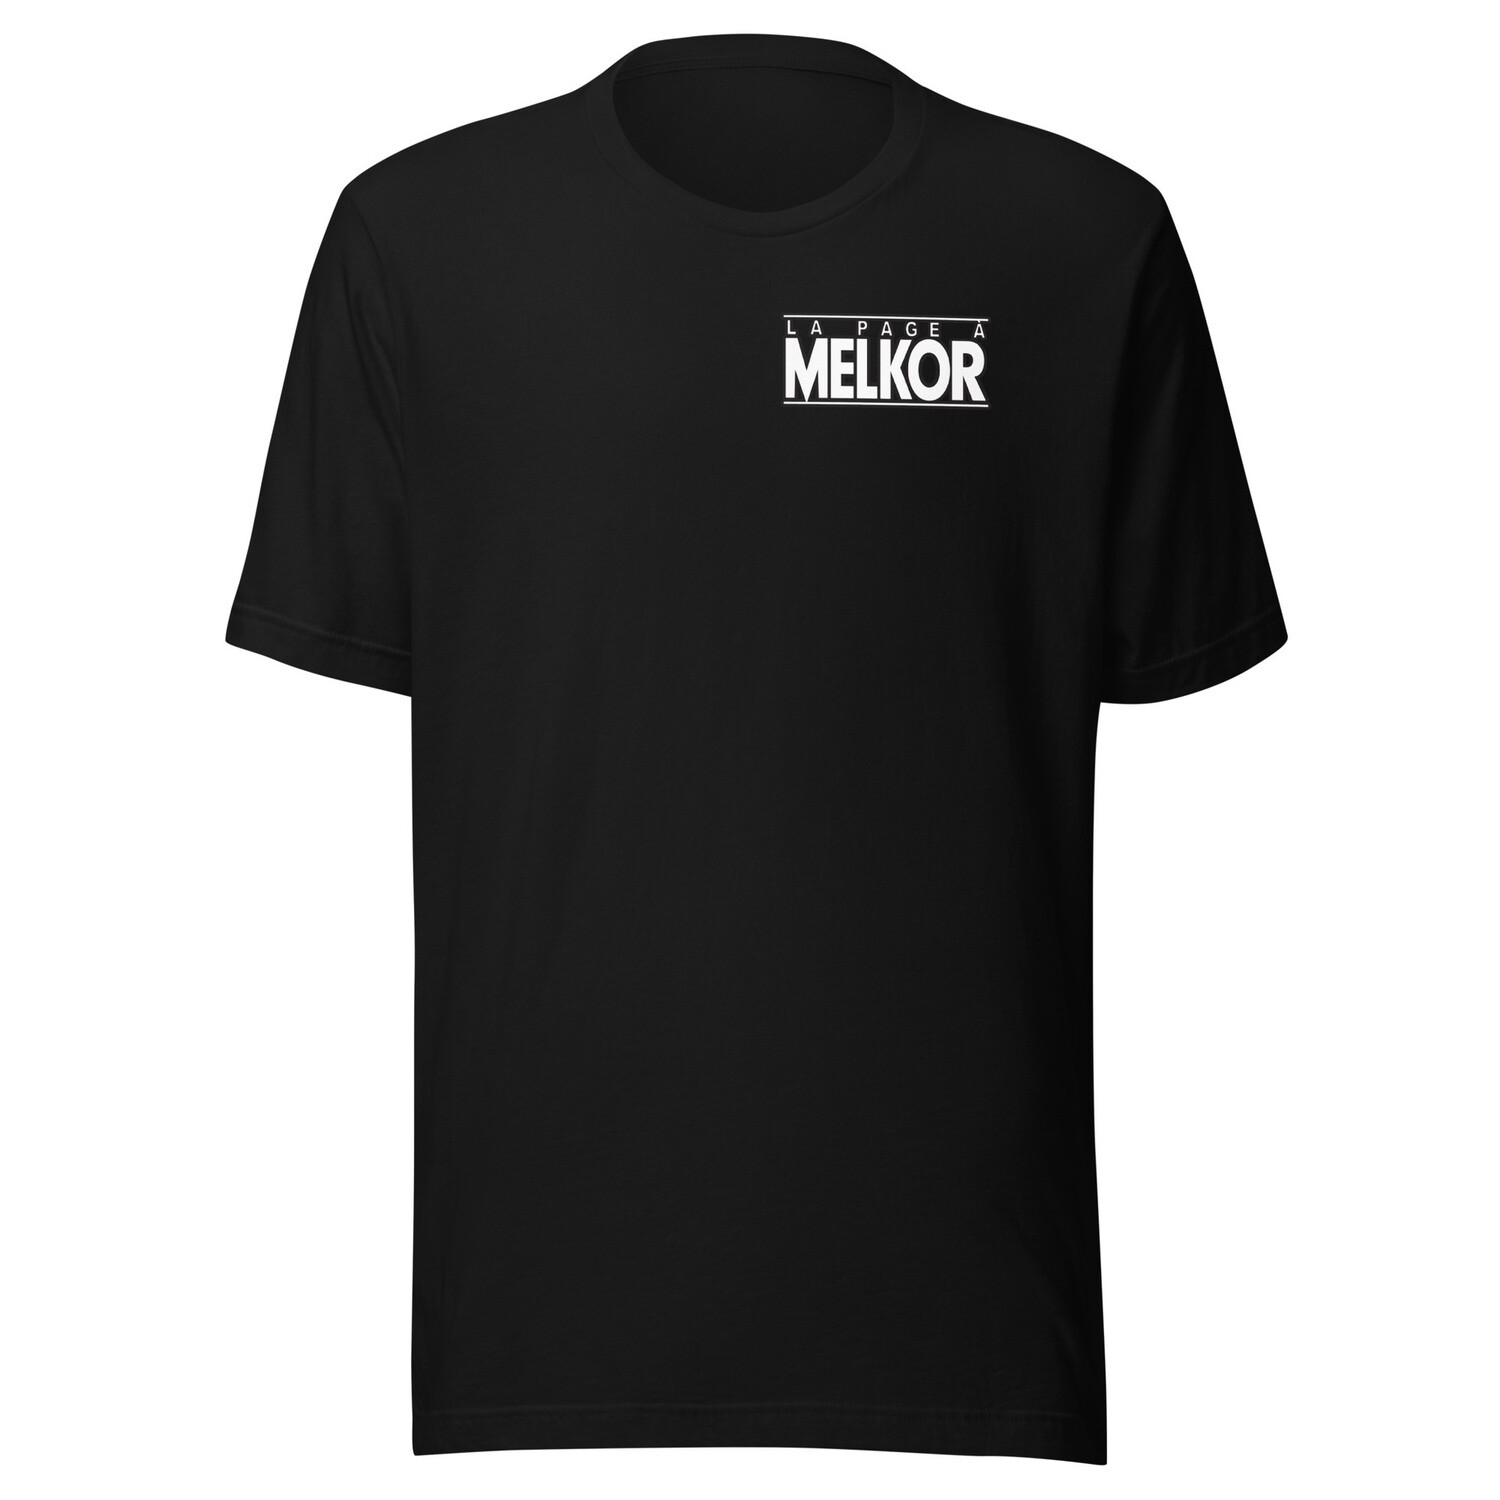 T-Shirt La Page à Melkor (Logo imprimé seulement), Couleur: Noir, Grandeur: S